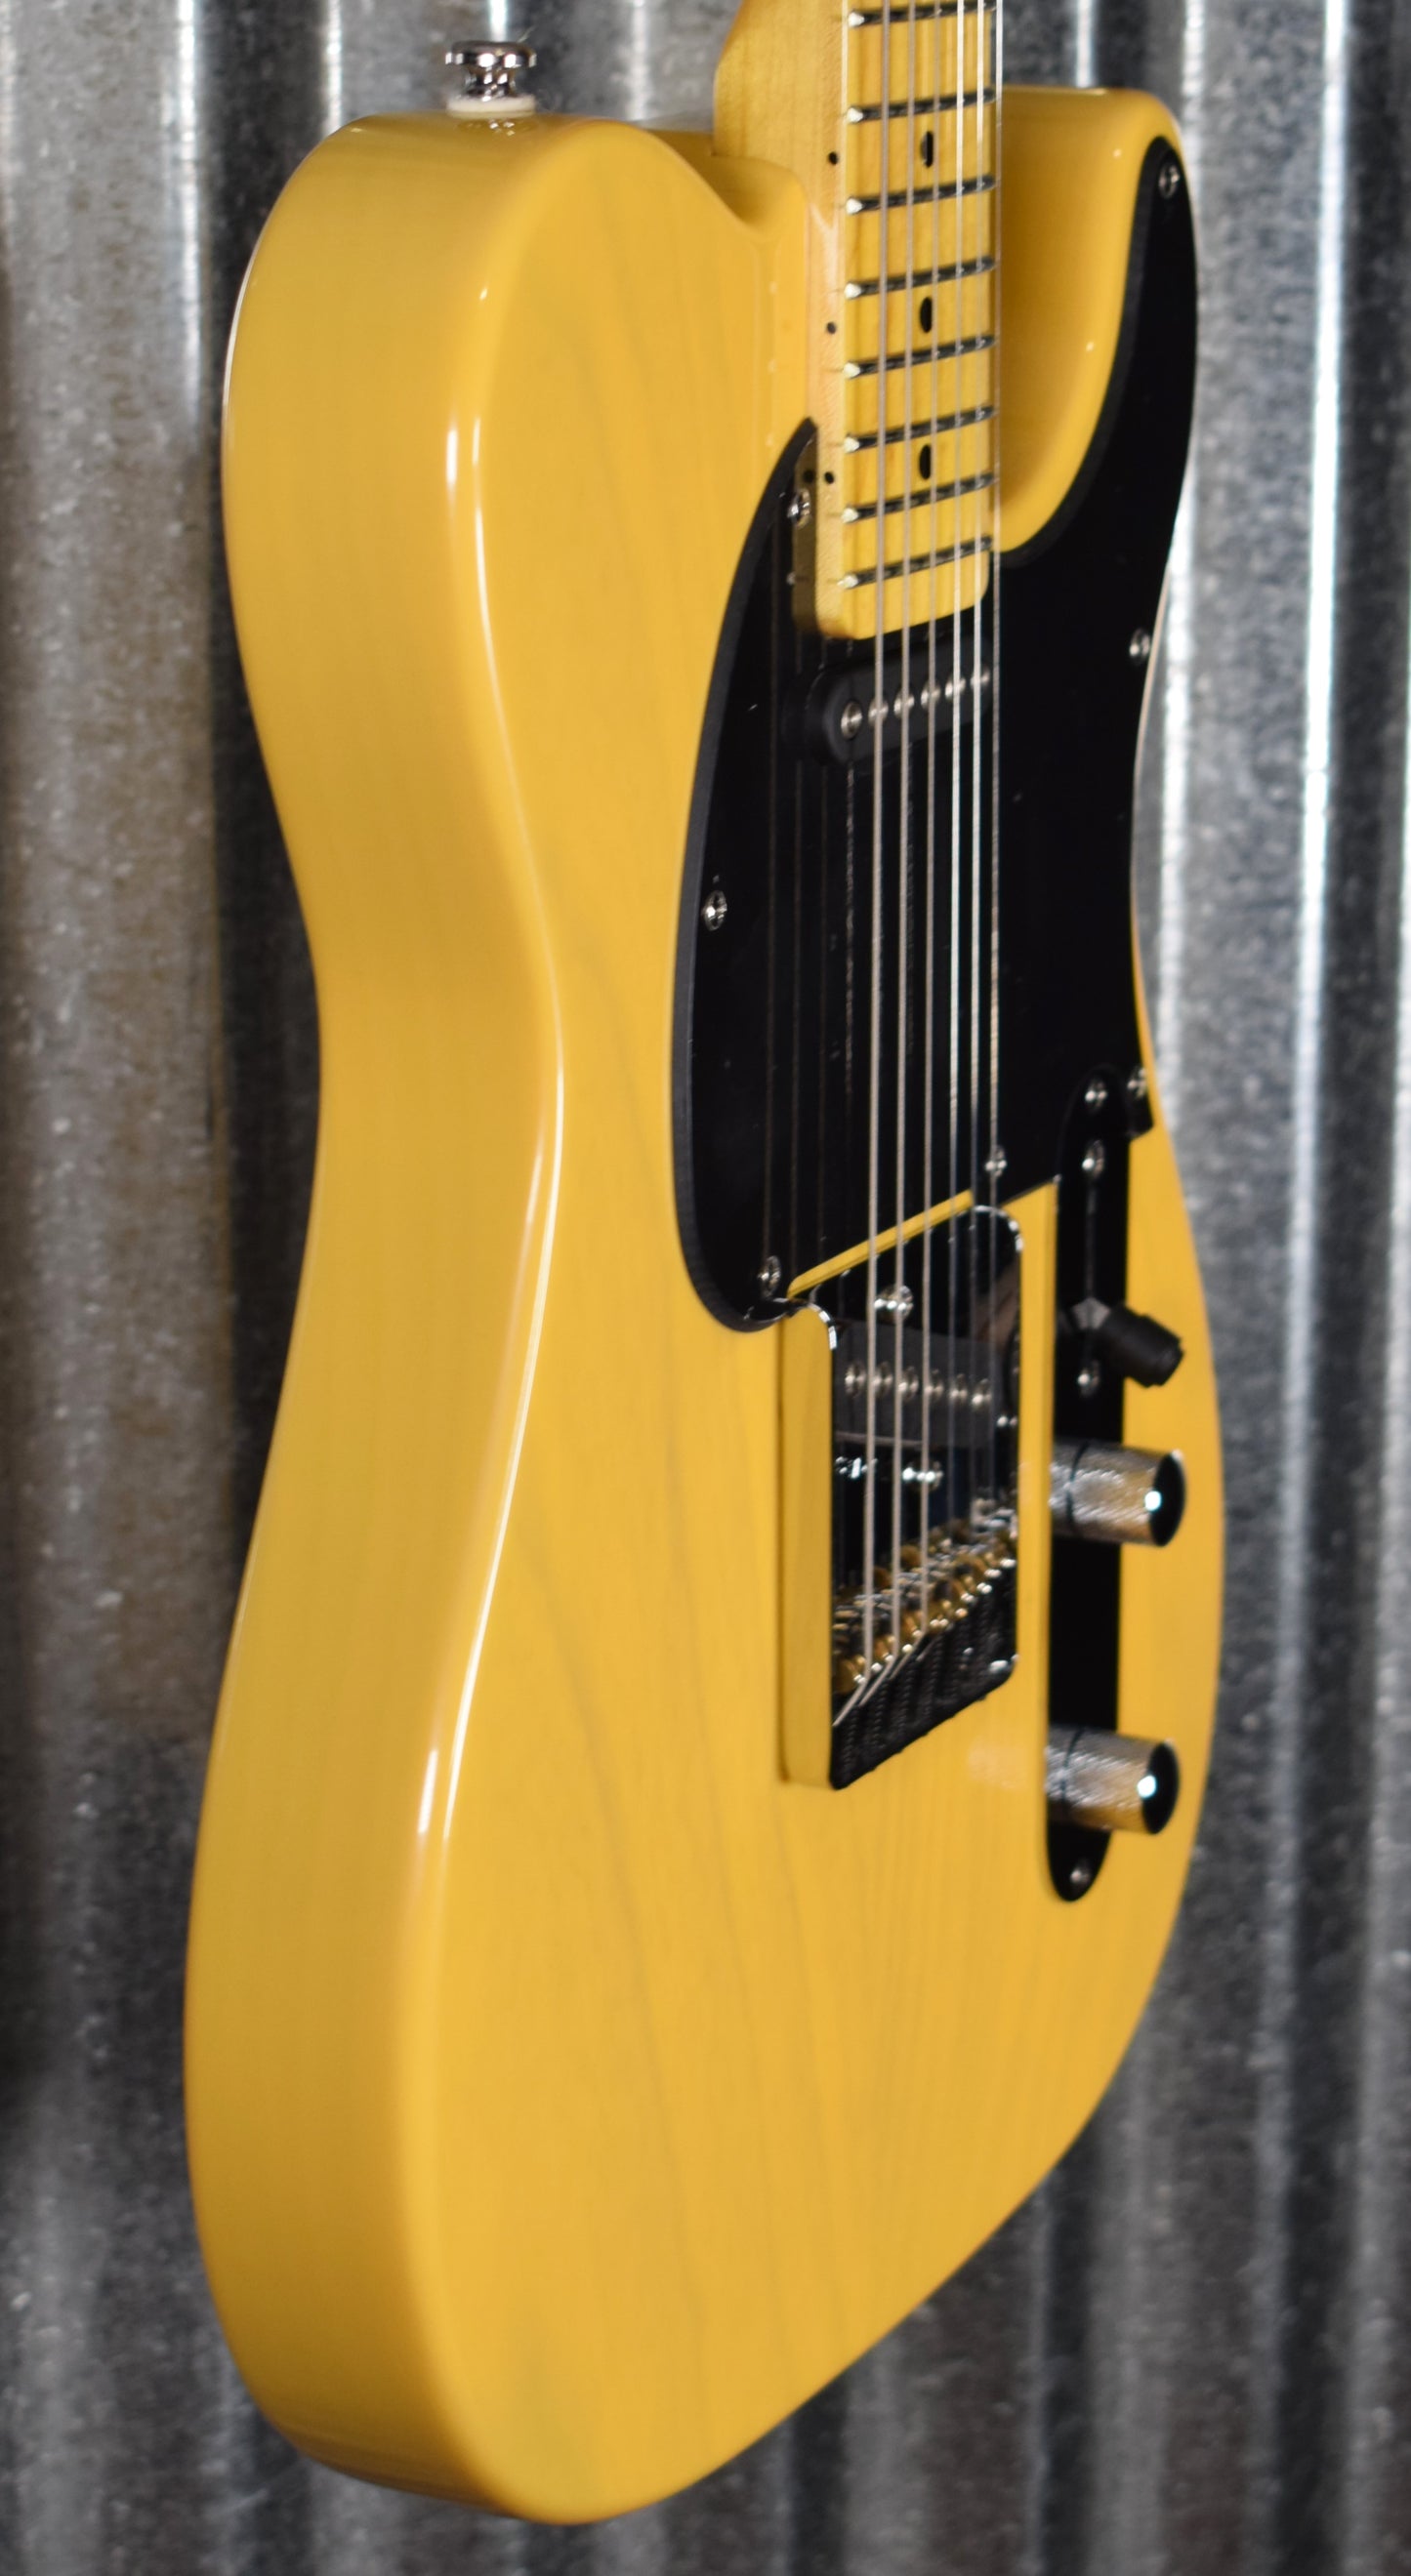 G&L Tribute ASAT Classic Butterscotch Blonde Guitar #1665 Demo